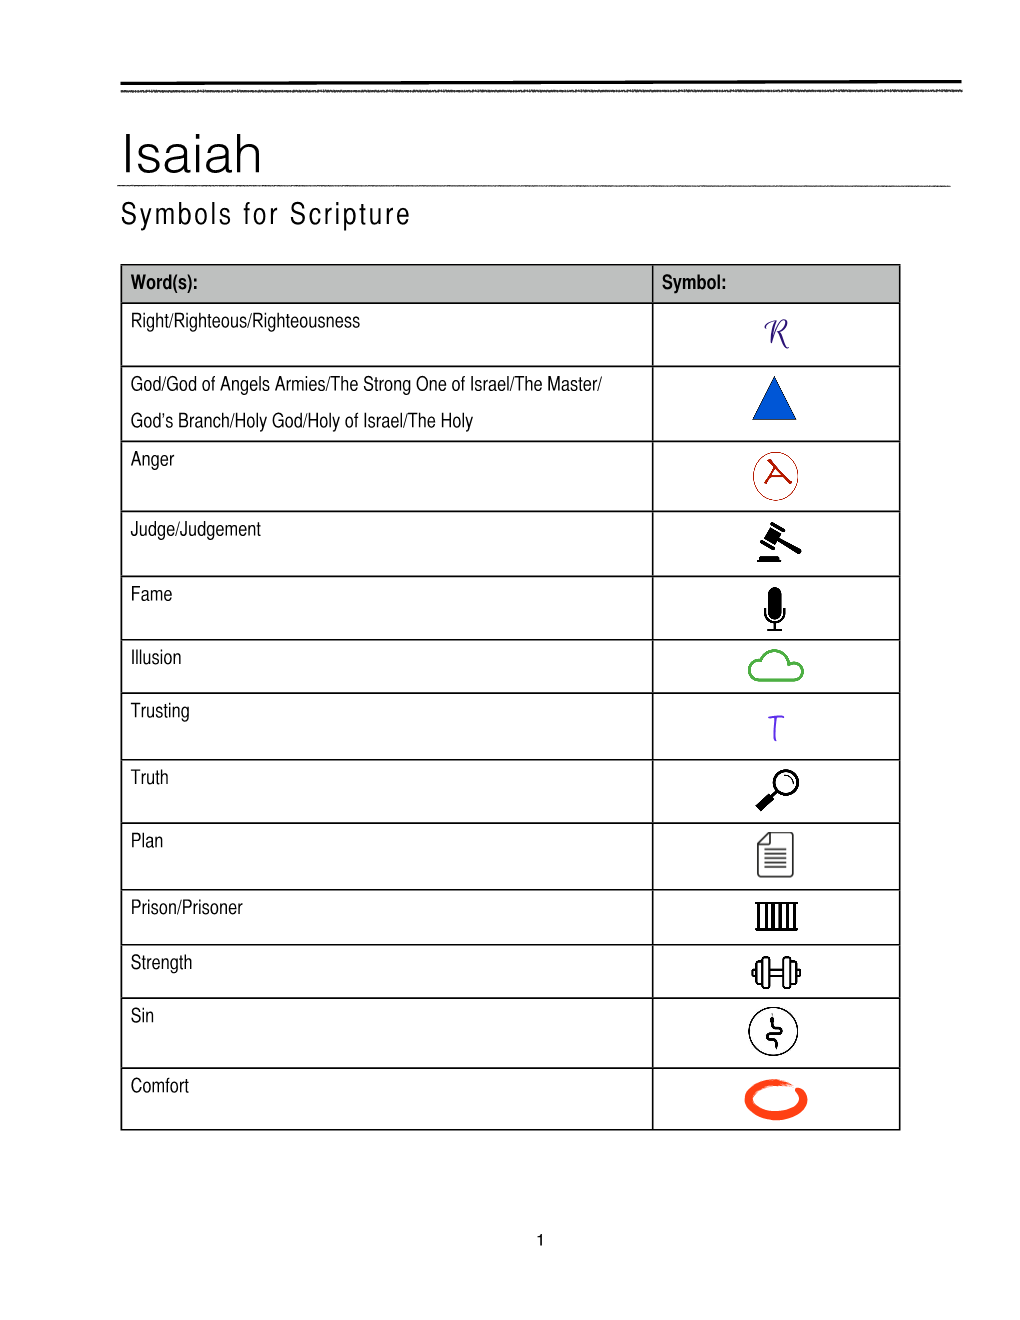 Isaiah Symbols for Scripture